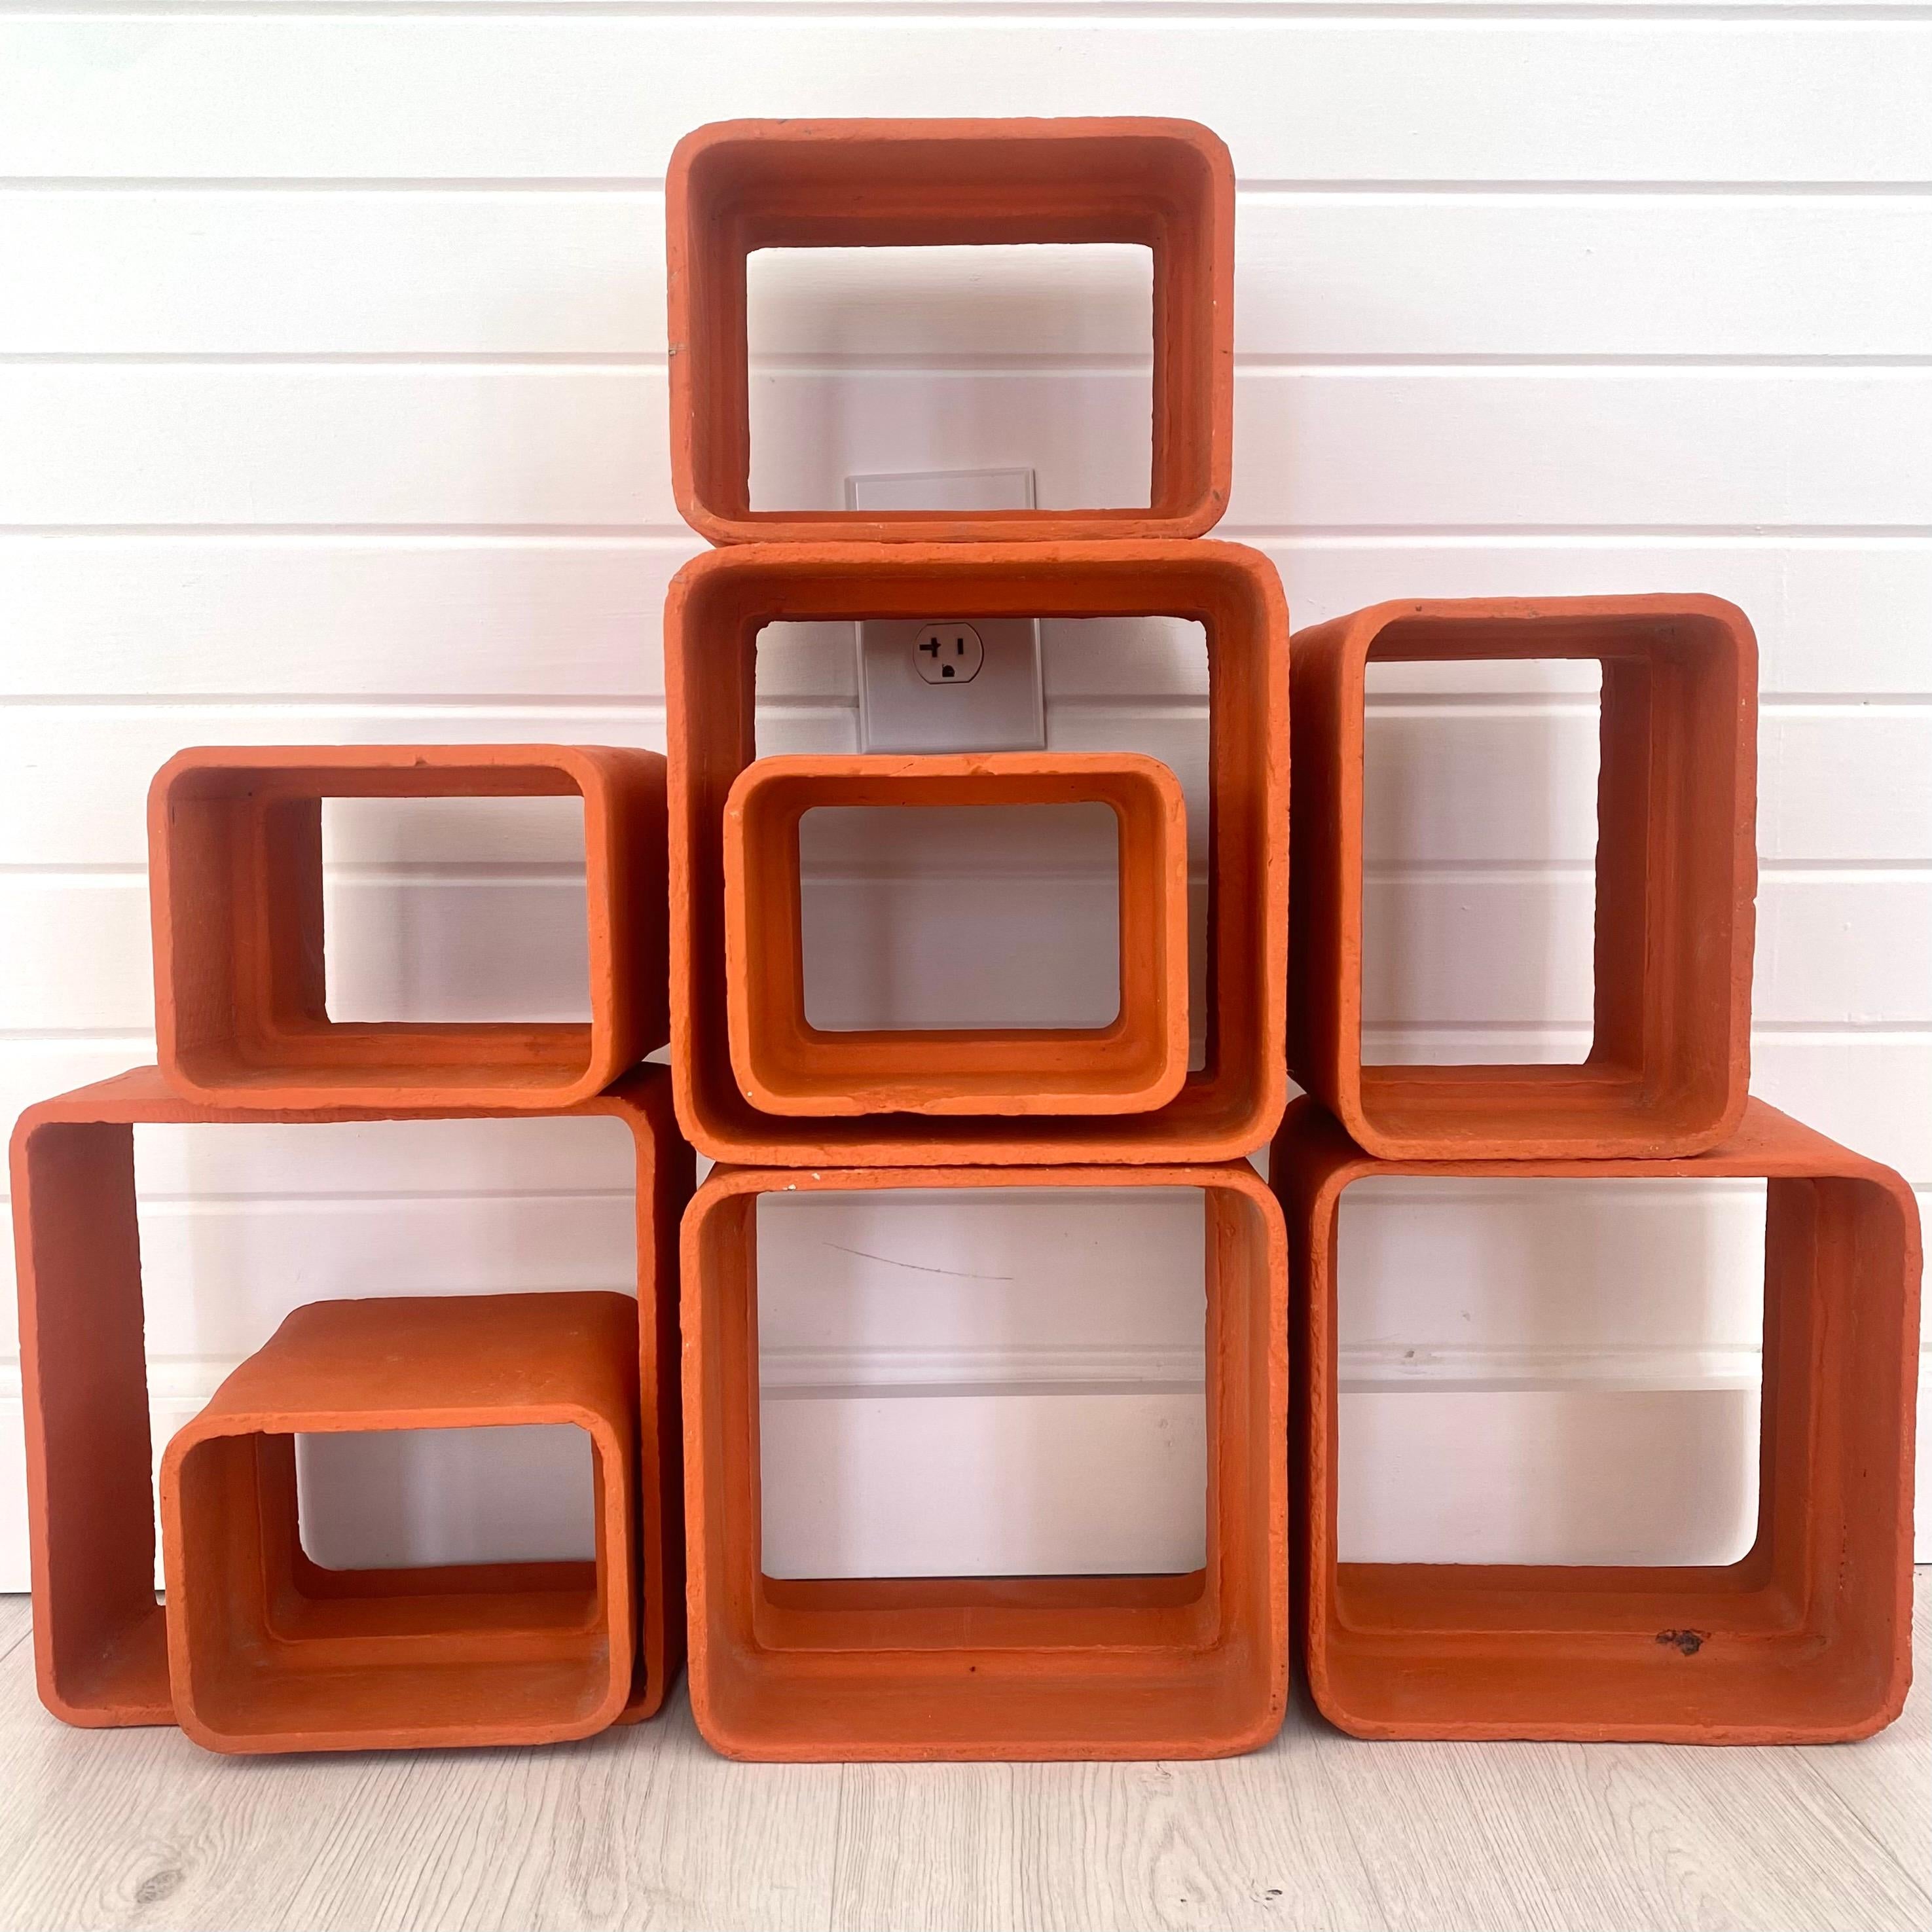 Bel ensemble de cubes en béton peints dans un orange pastel par l'architecte et designer suisse Willy Guhl. Fabriqué à la main au début des années 1960 en Suisse. Produit par Eternit. Ensemble de 9 cubes en très bon état d'origine. Peut être arrangé